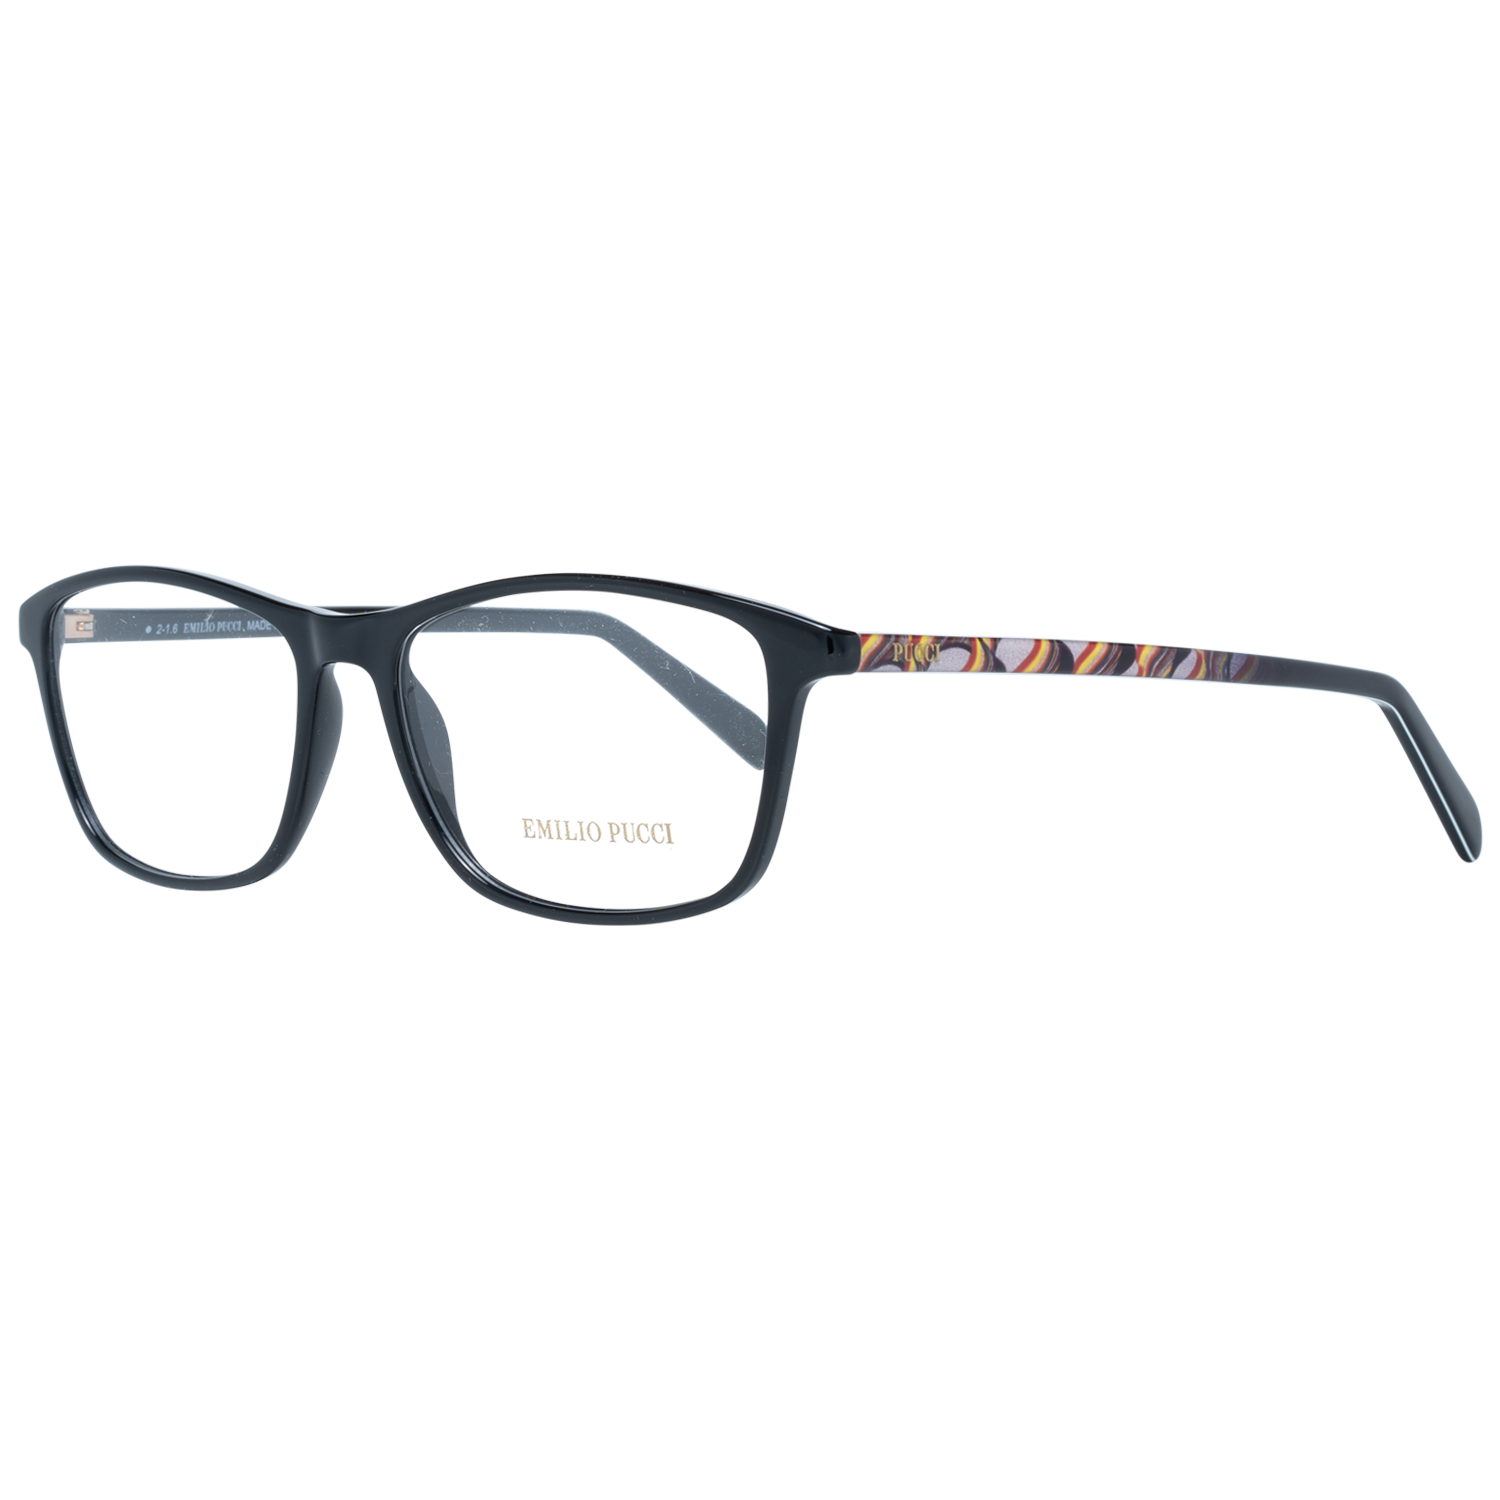 Emilio Pucci Frames Emilio Pucci Optical Frame EP5048 001 54 Eyeglasses Eyewear UK USA Australia 